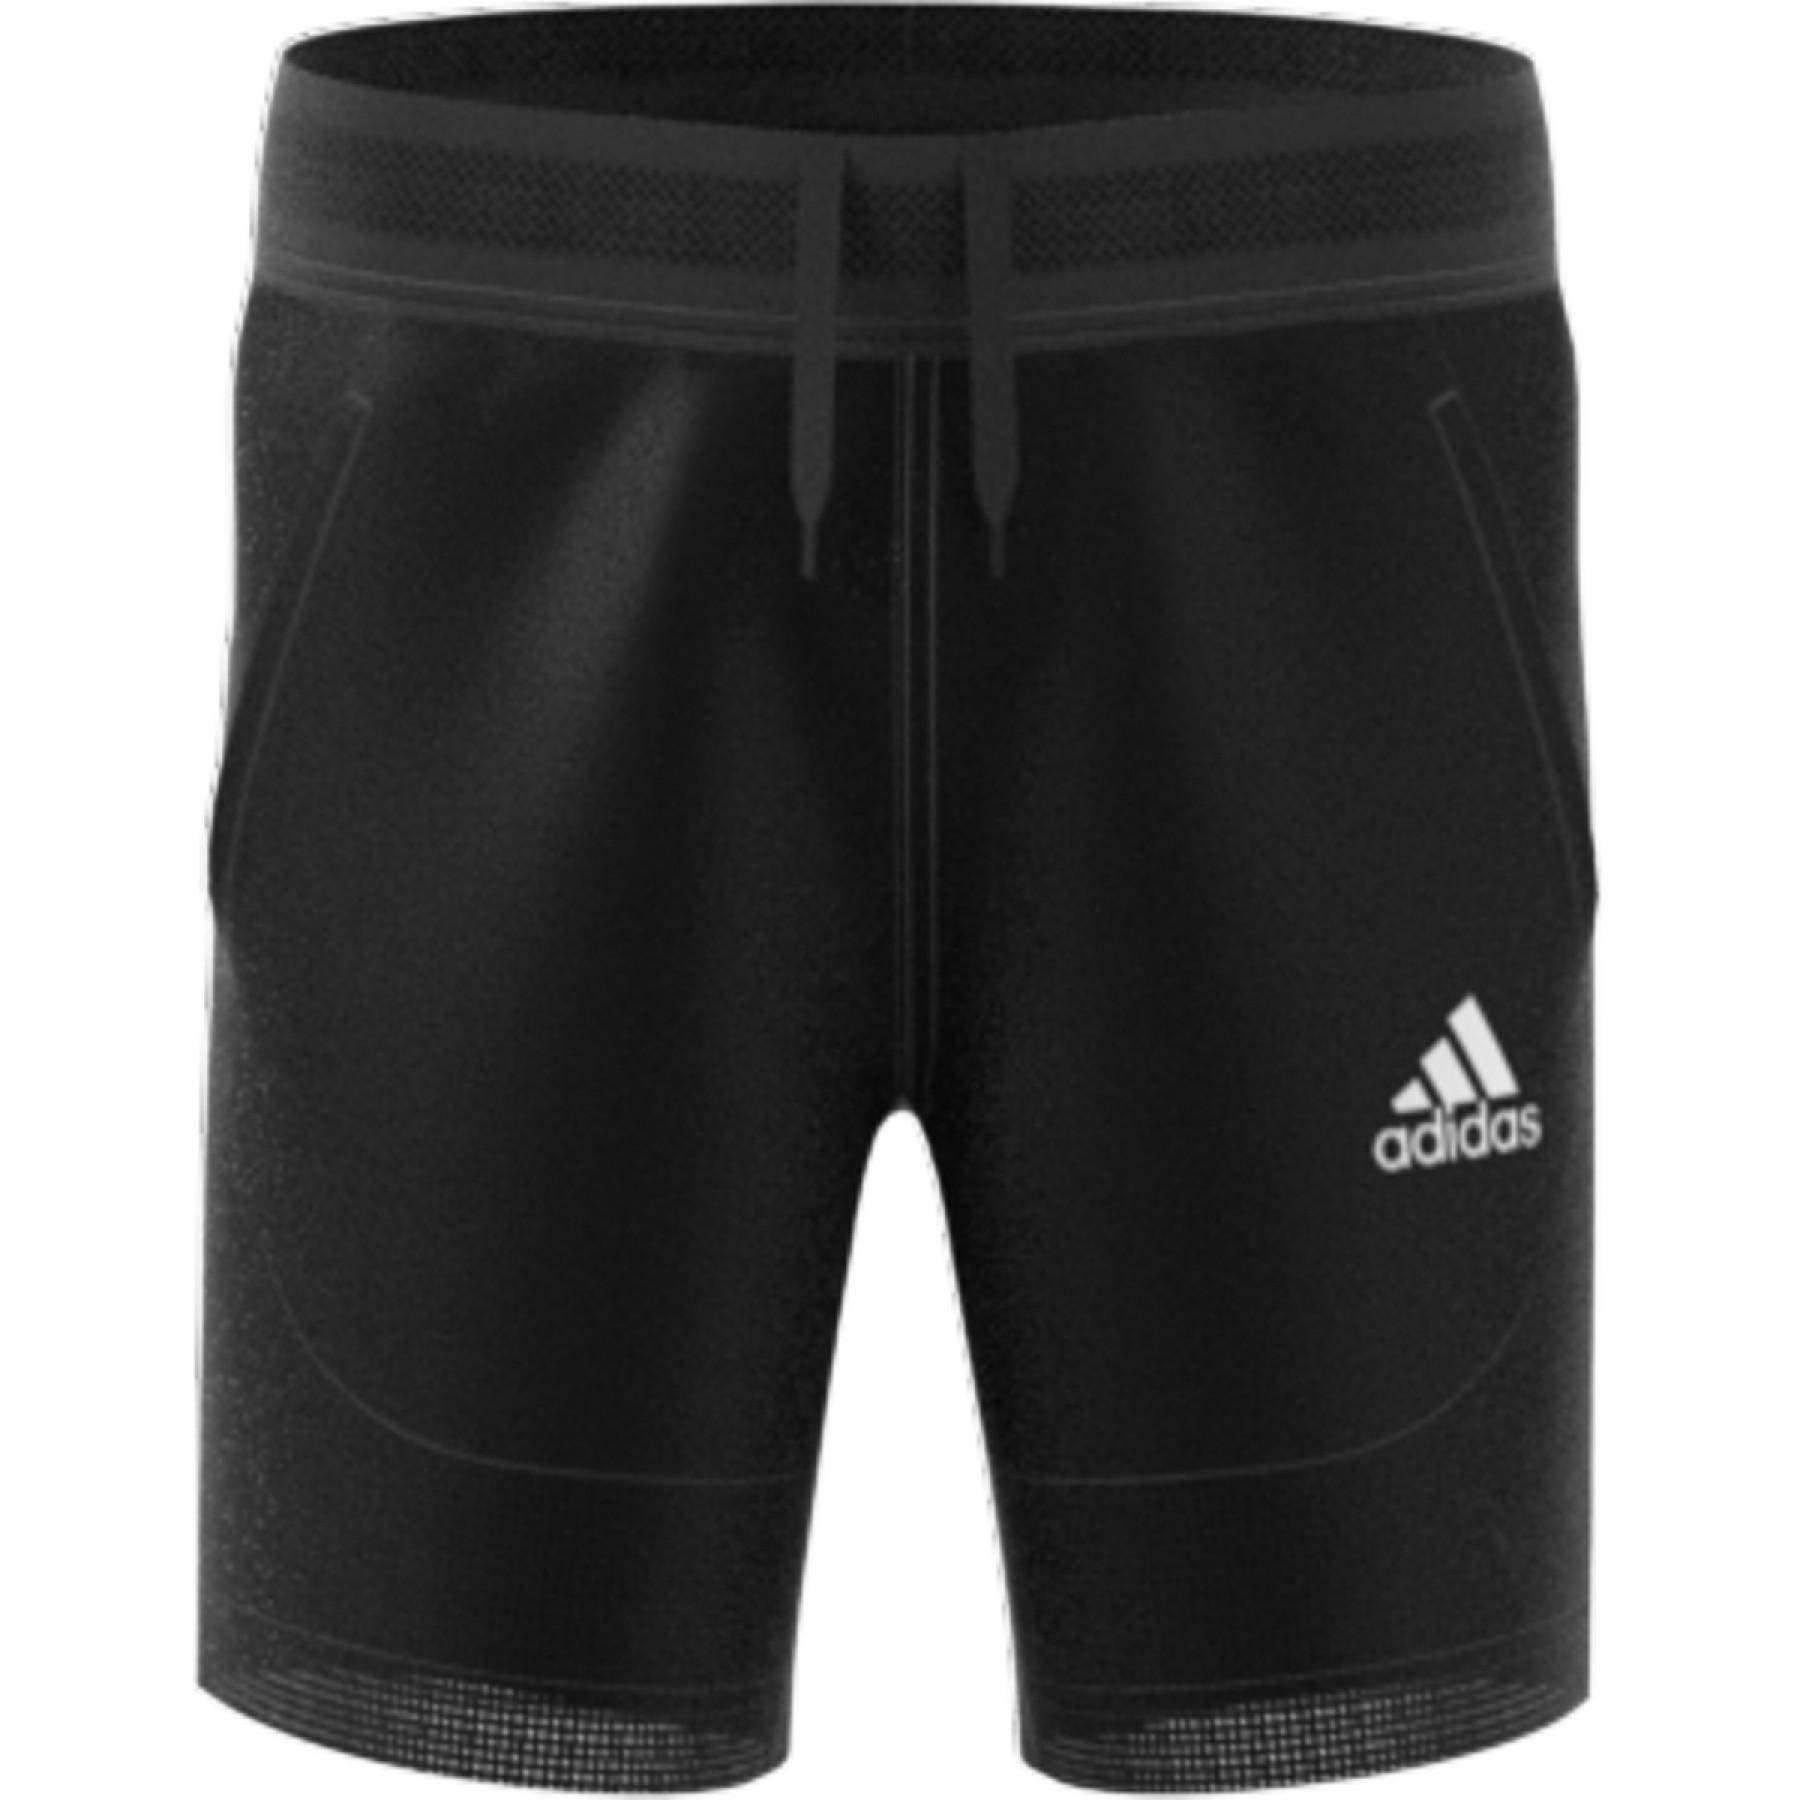 Children's shorts adidas Heat Readyport